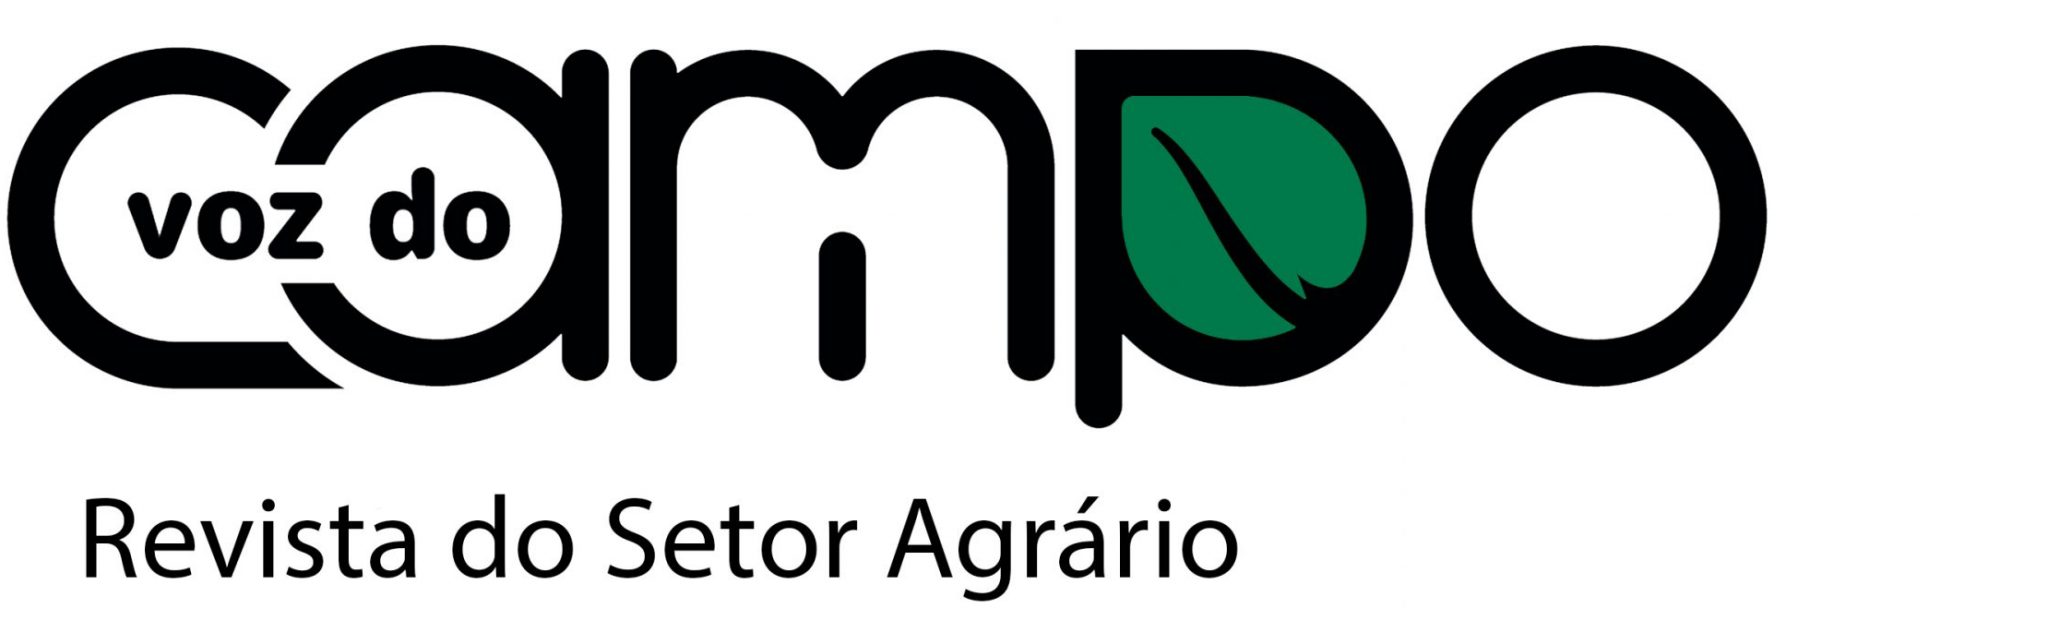 logo VC Novo Verde com Fundo scaled e1680908133294 2048x620